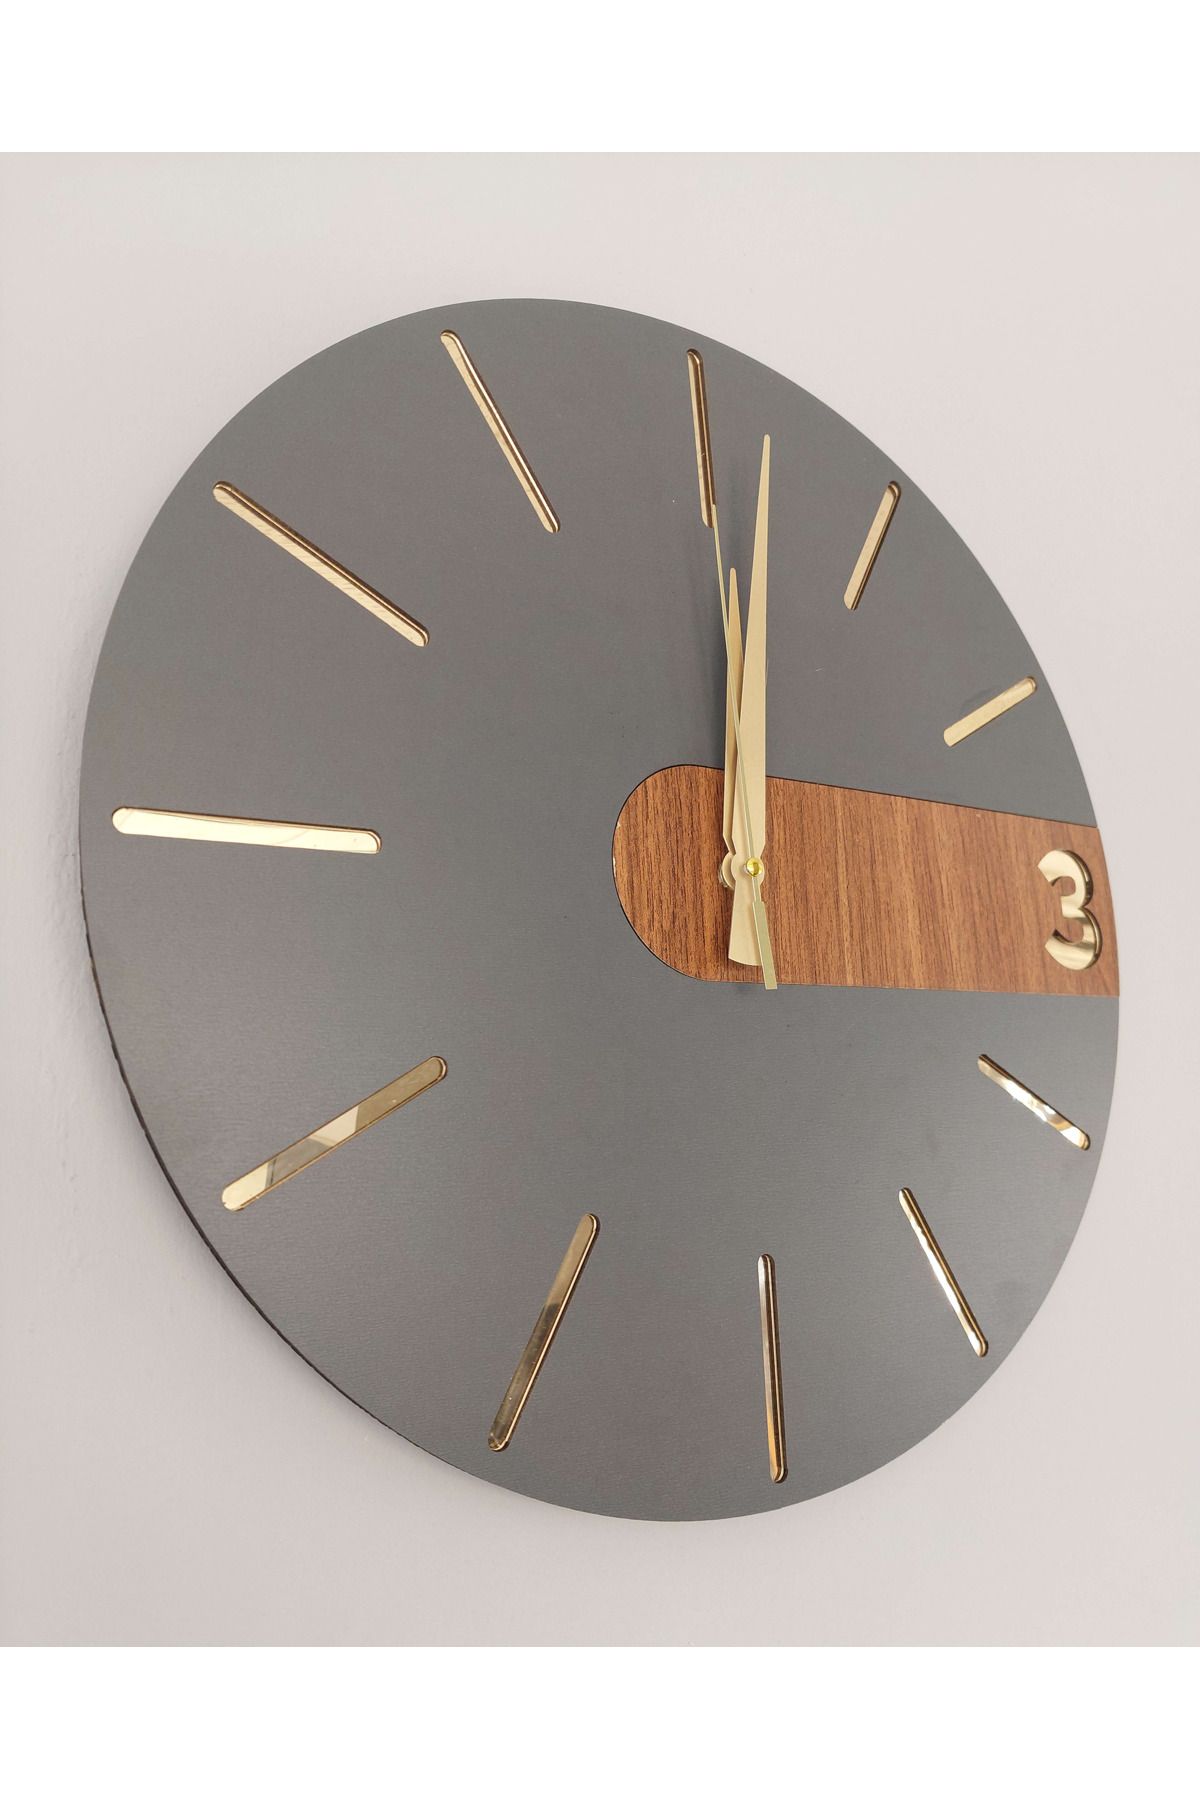 aswood Modern Şık Rustik Vıp Dekoratif Katmanlı 40cm Duvar saati